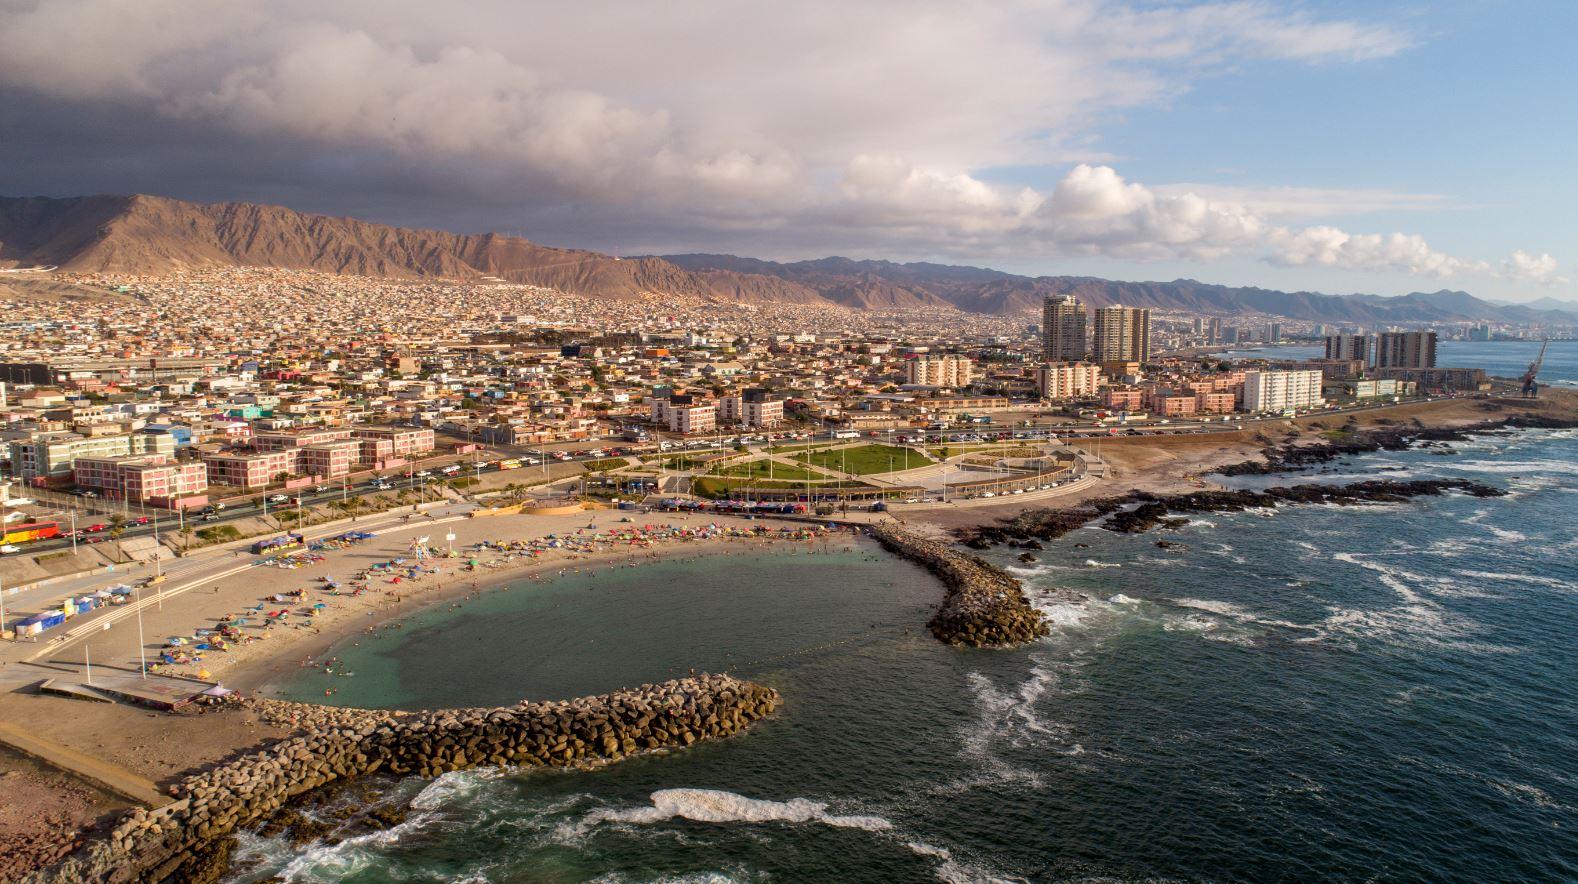 Vista aérea de una ciudad costera en Chile